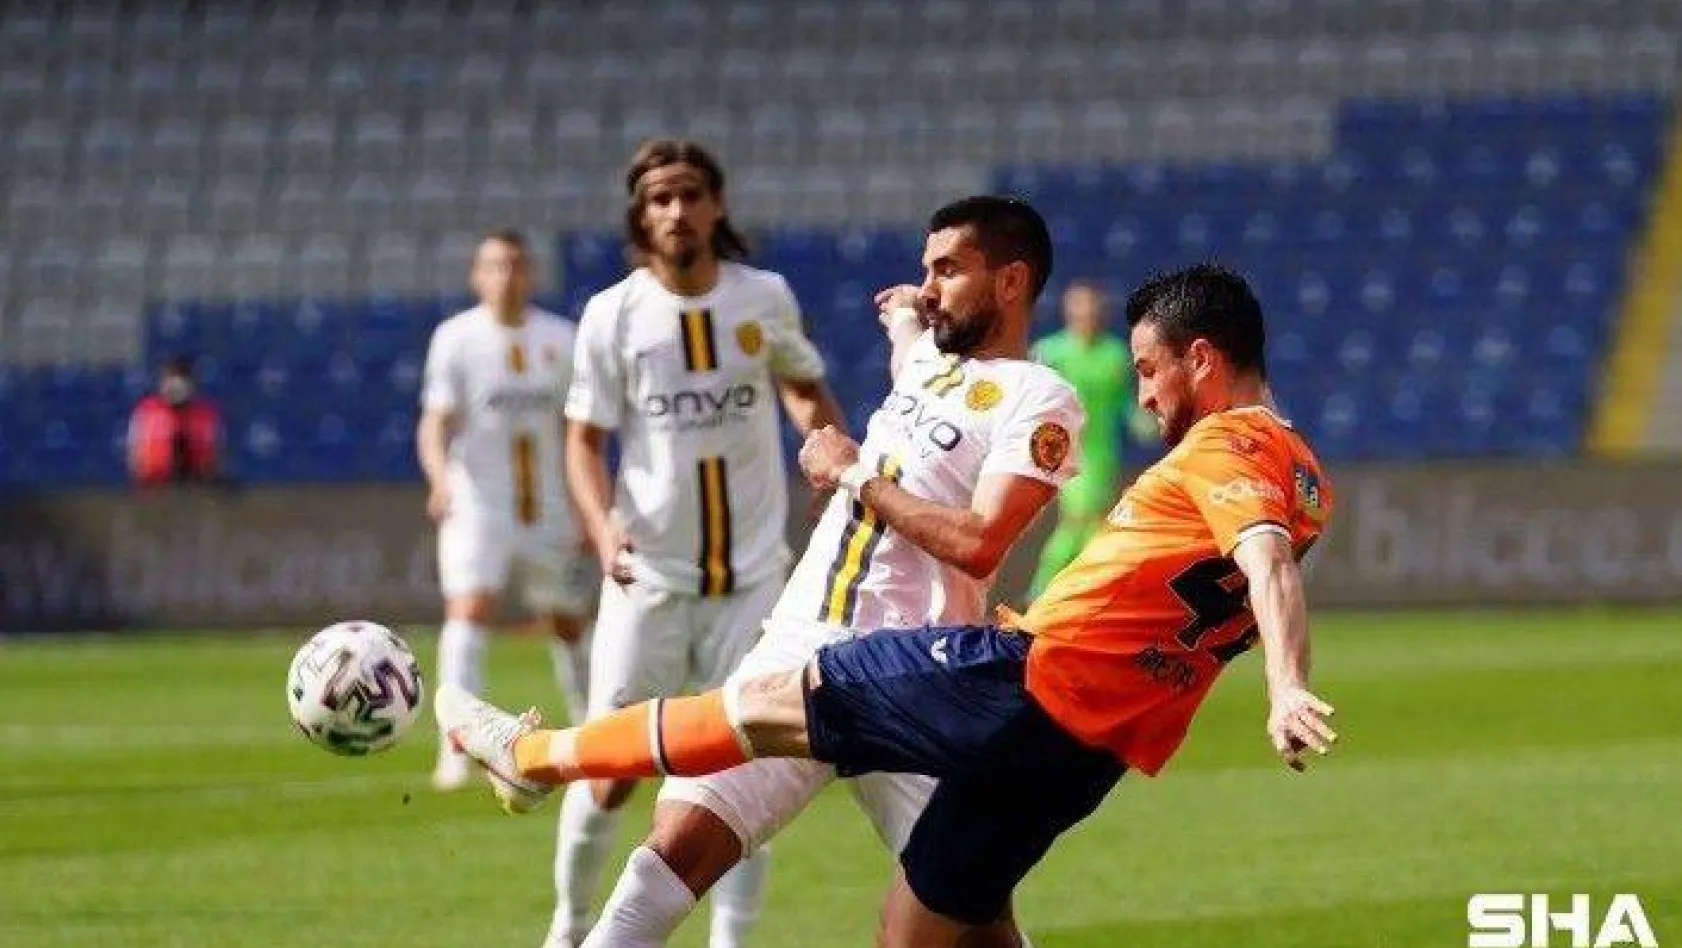 Süper Lig: Medipol Başakşehir: 2 - MKE Ankaragücü: 1 (Maç sonucu)